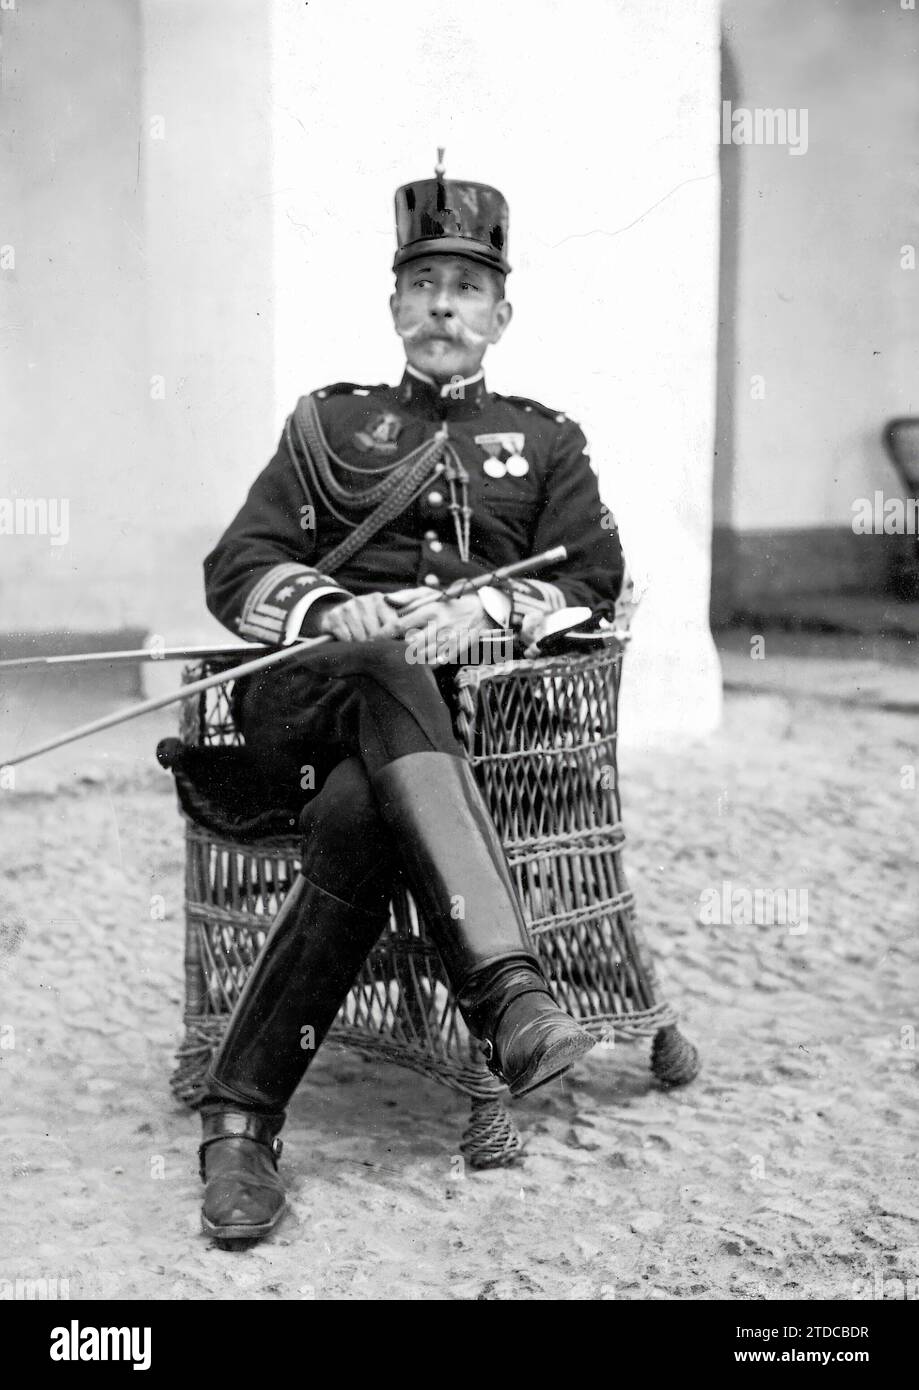 09/09/1909. Colonel D. Enrique Fernandez Blanco, head of the King's regiment. Credit: Album / Archivo ABC Stock Photo